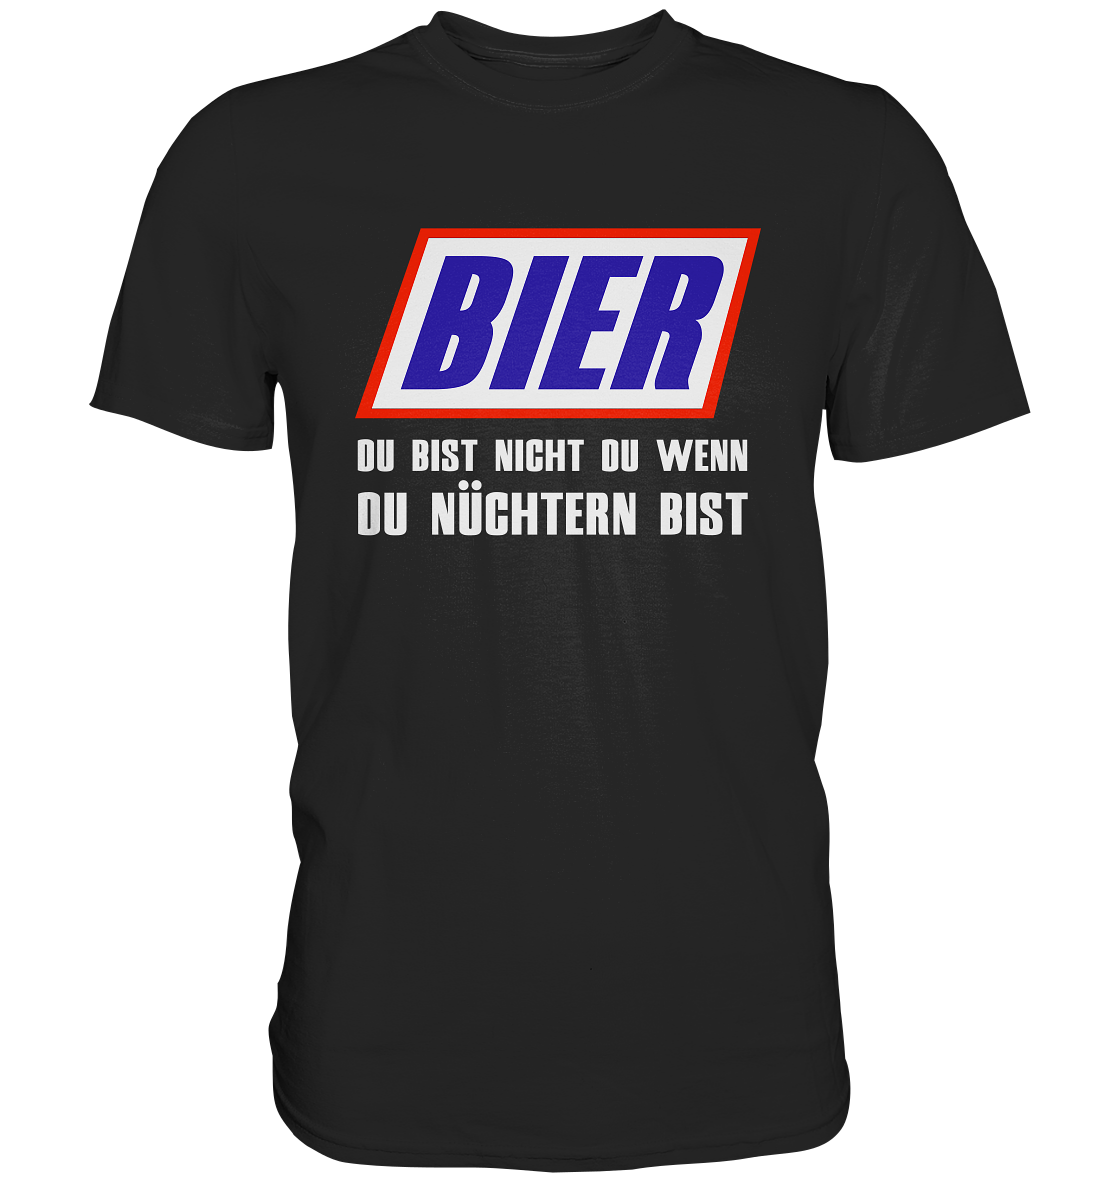 Bier, du bist nicht du, wenn du nüchtern bist - Premium Shirt